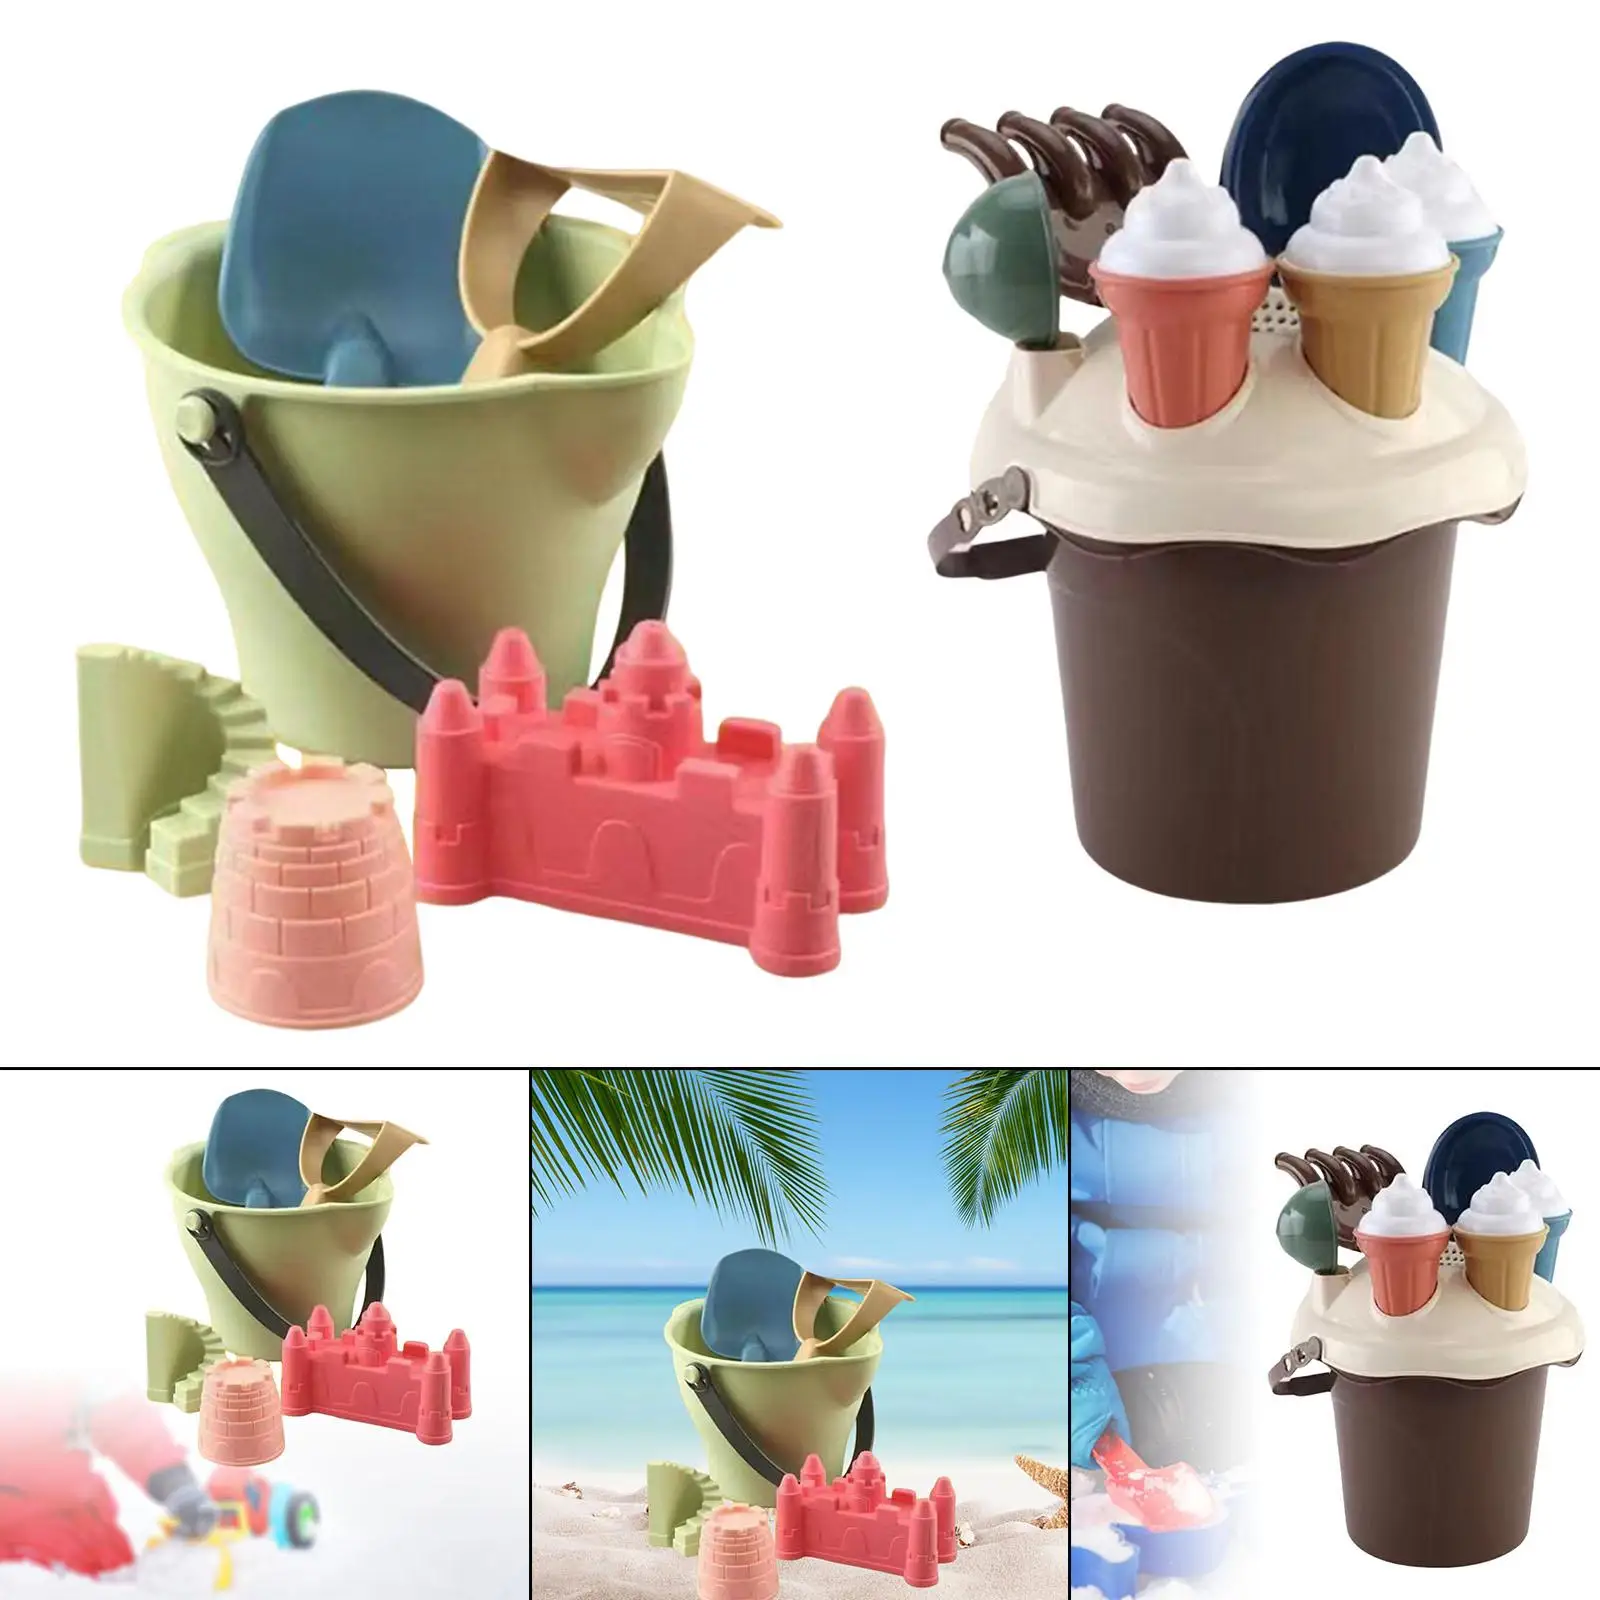 Travel Sand Toys Castle Kit,Outdoor Indoor Play Gift,Beach Tool Kit,Sandbox Toys for Children Kids Boys Girls Toddler